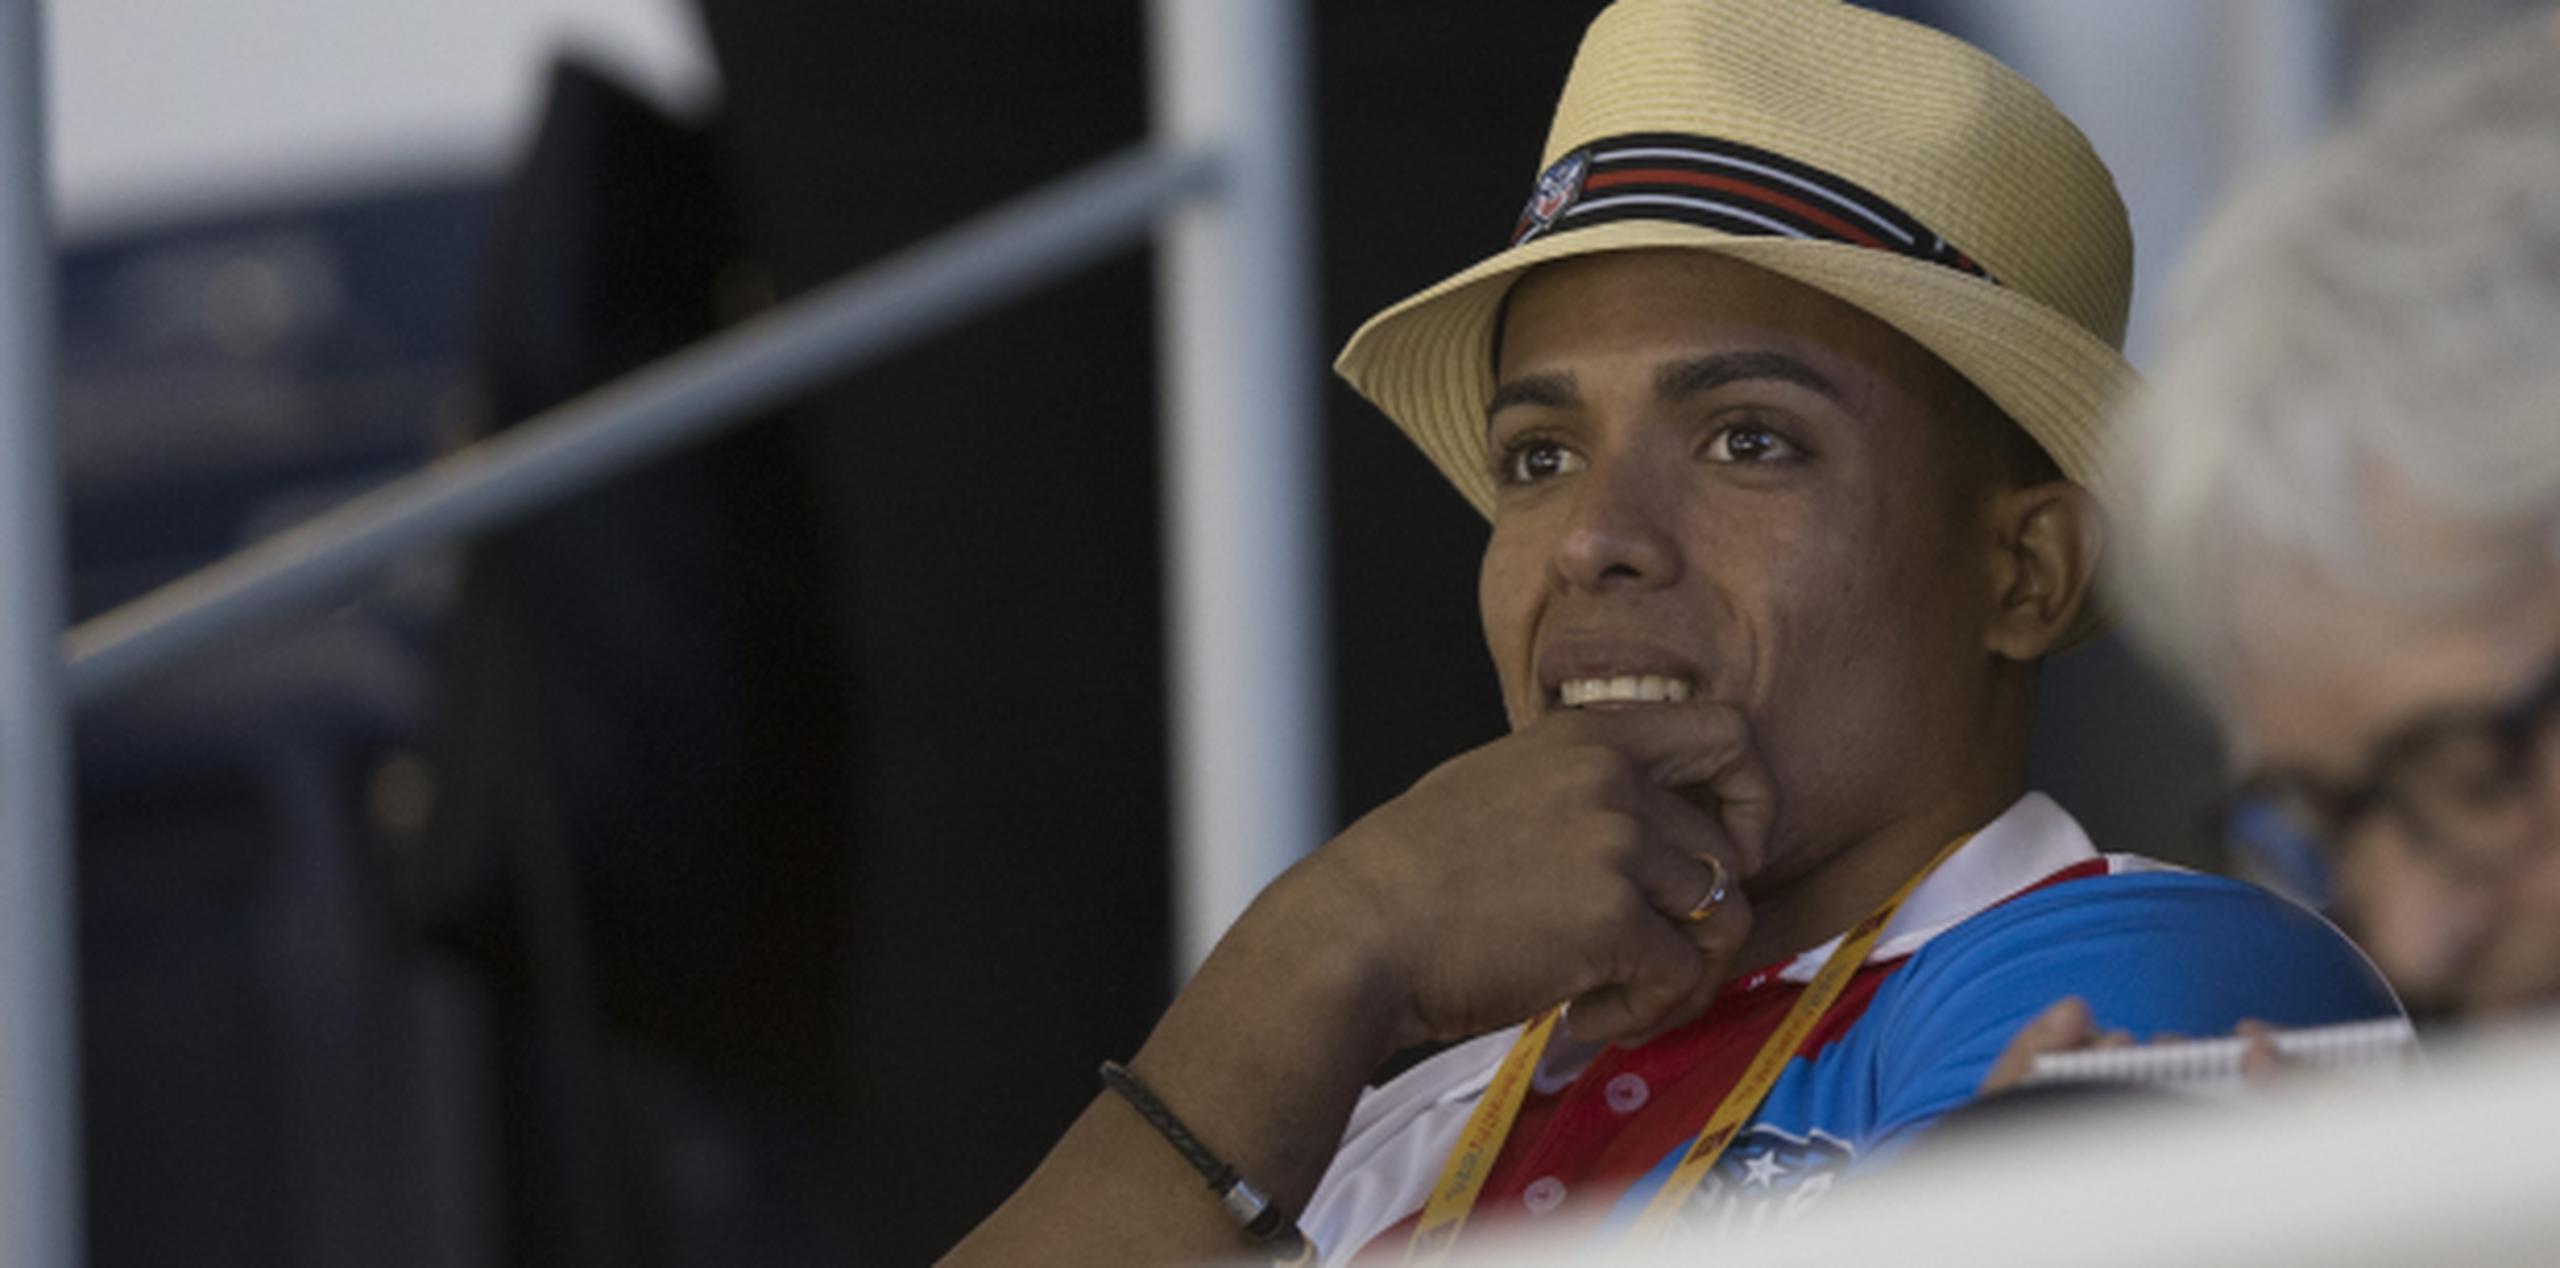 Luis Rivera fue ayer el abanderado de la delegación boricua en TORONTO 2015, pero no pudo participar en los Panamericanos por una lesión en su bíceps izquierdo.
(xavier.araujo@gfrmedia.com)